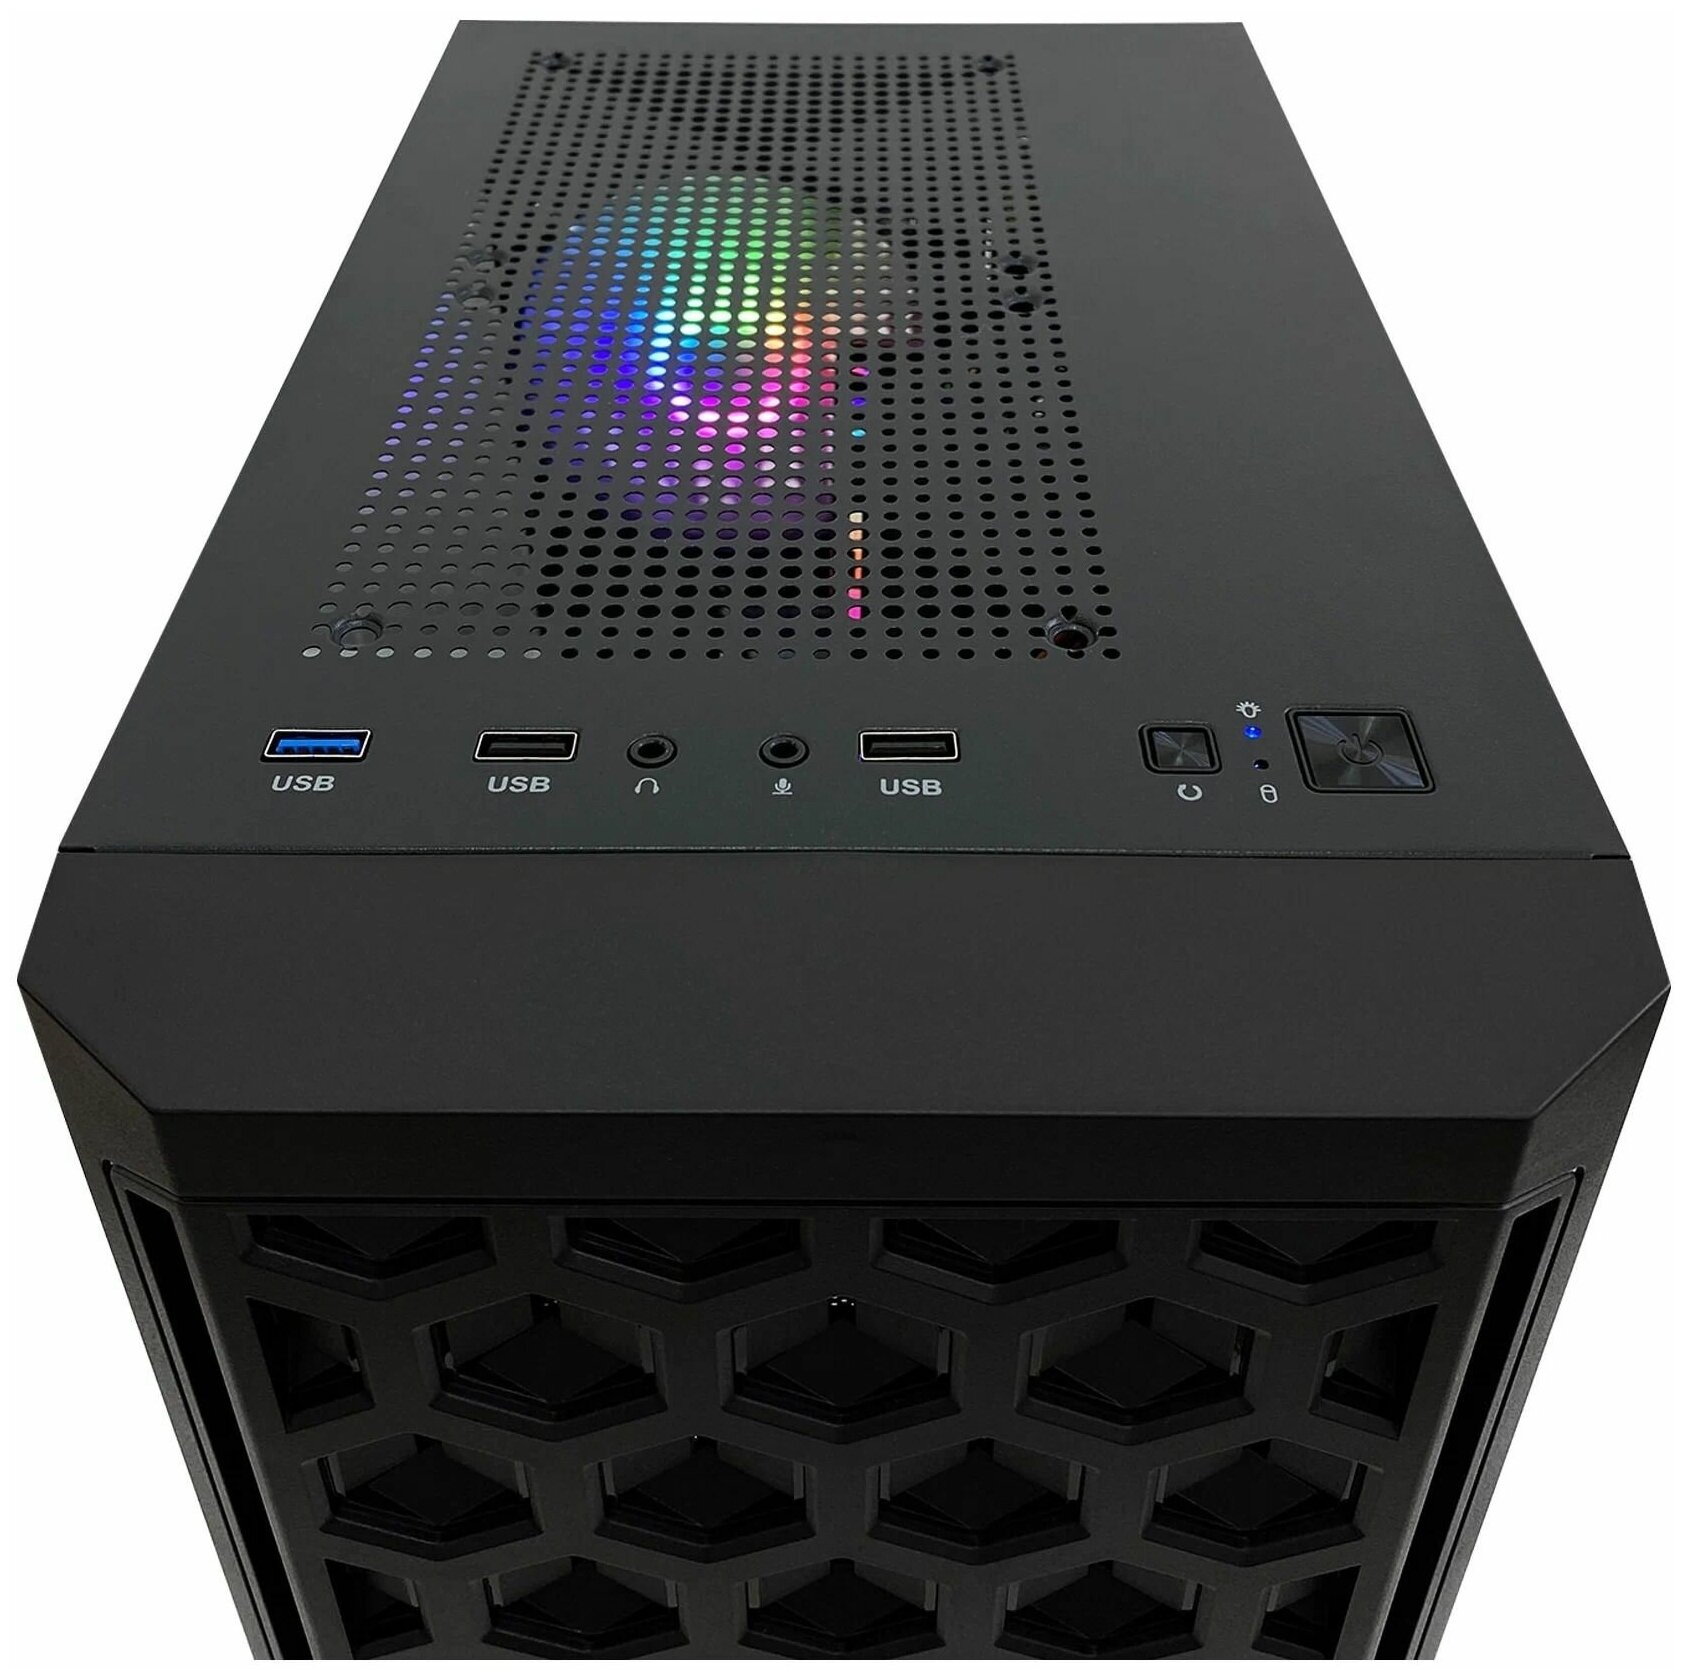 Игровой компьютер Intercom Pro, AMD A8 9600, RAM 16 ГБ, SSD 240 ГБ, AMD Radeon Vega 3), черный